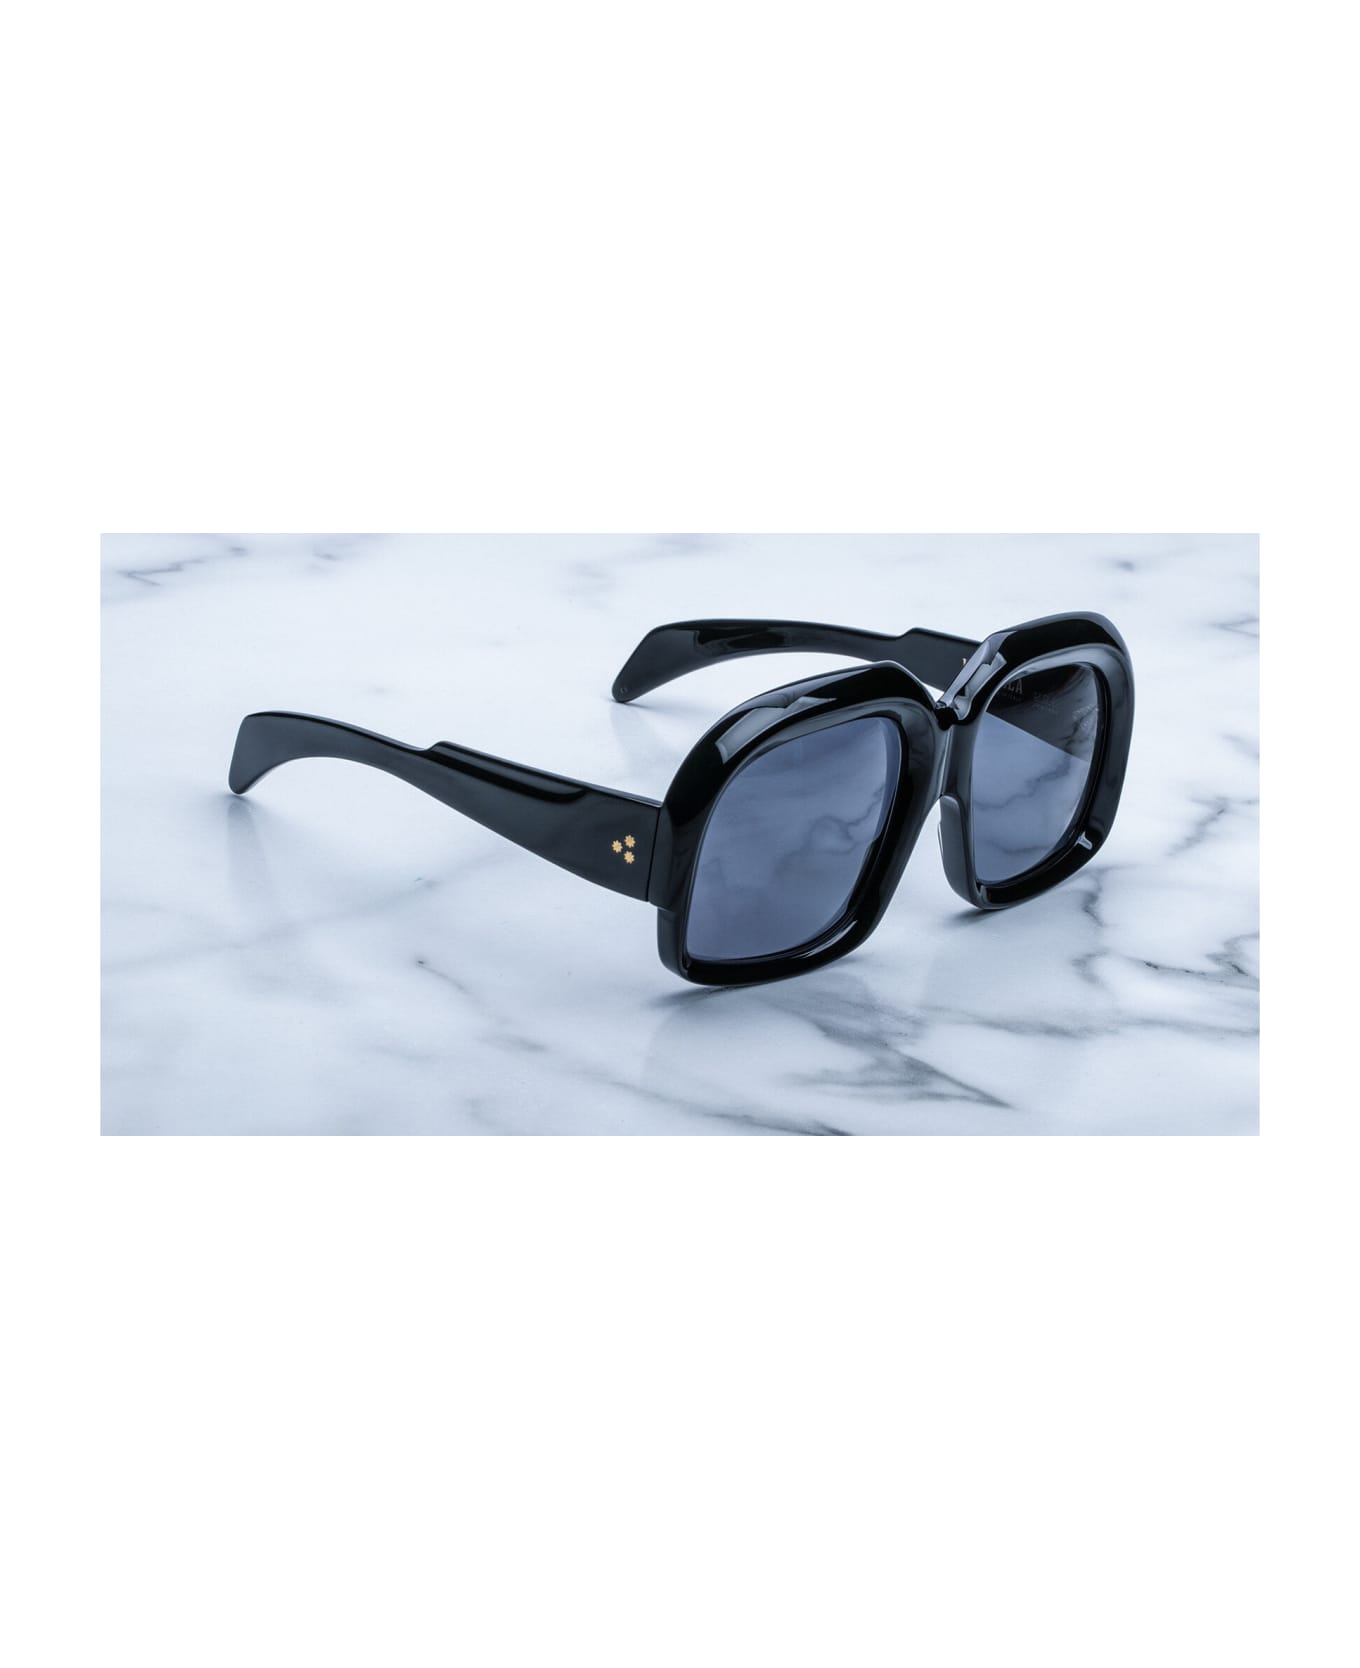 Jacques Marie Mage Euphoria Vandella - Black Sunglasses - Black